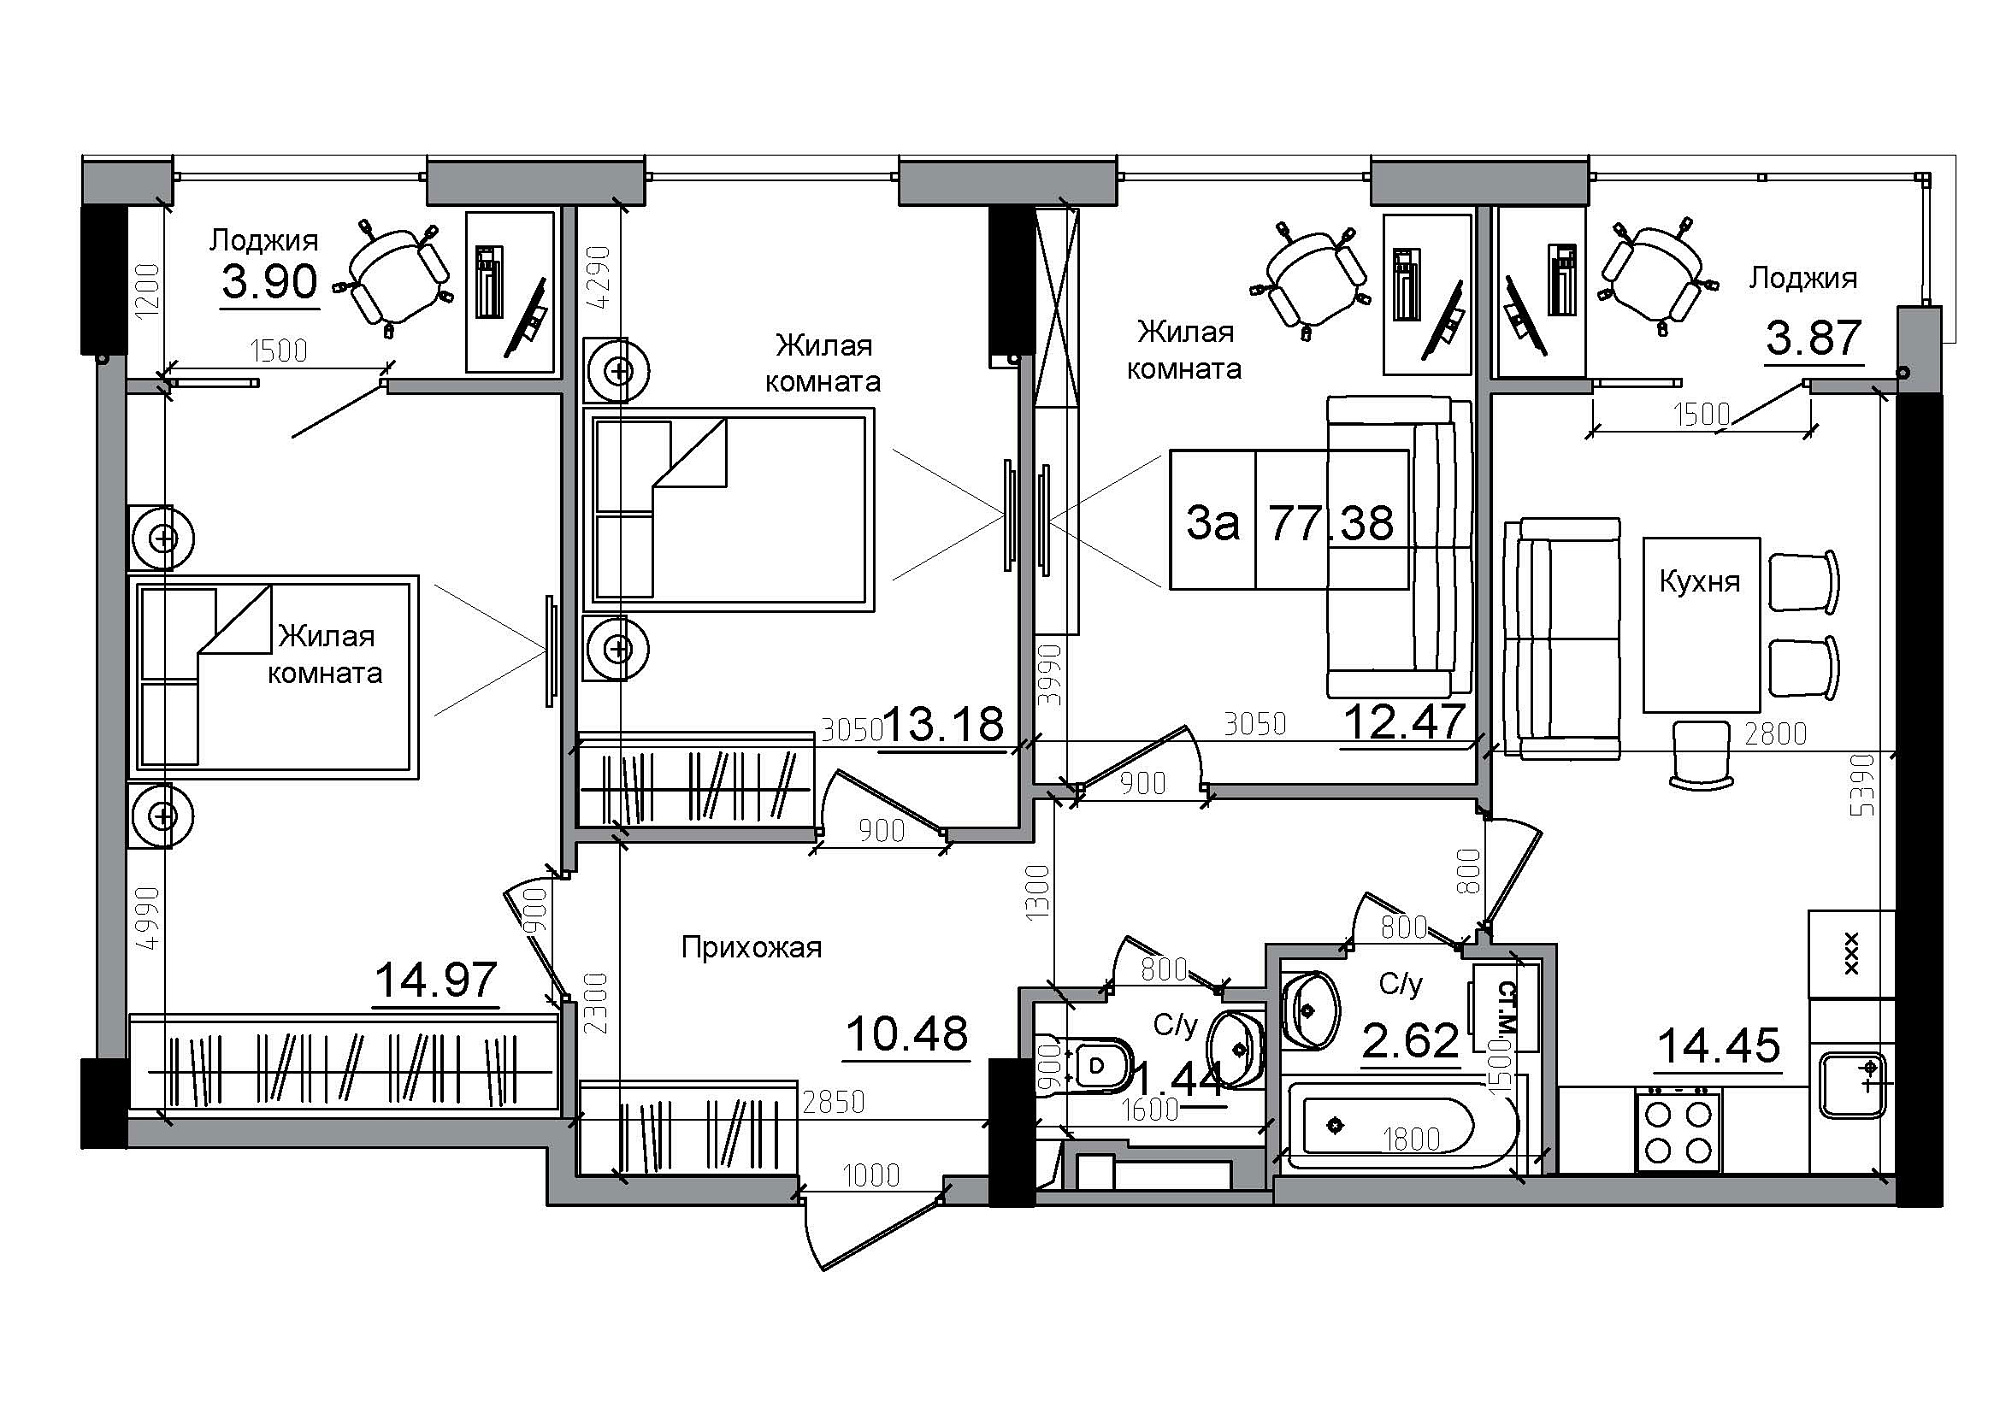 Планування 3-к квартира площею 77.38м2, AB-12-12/00010.